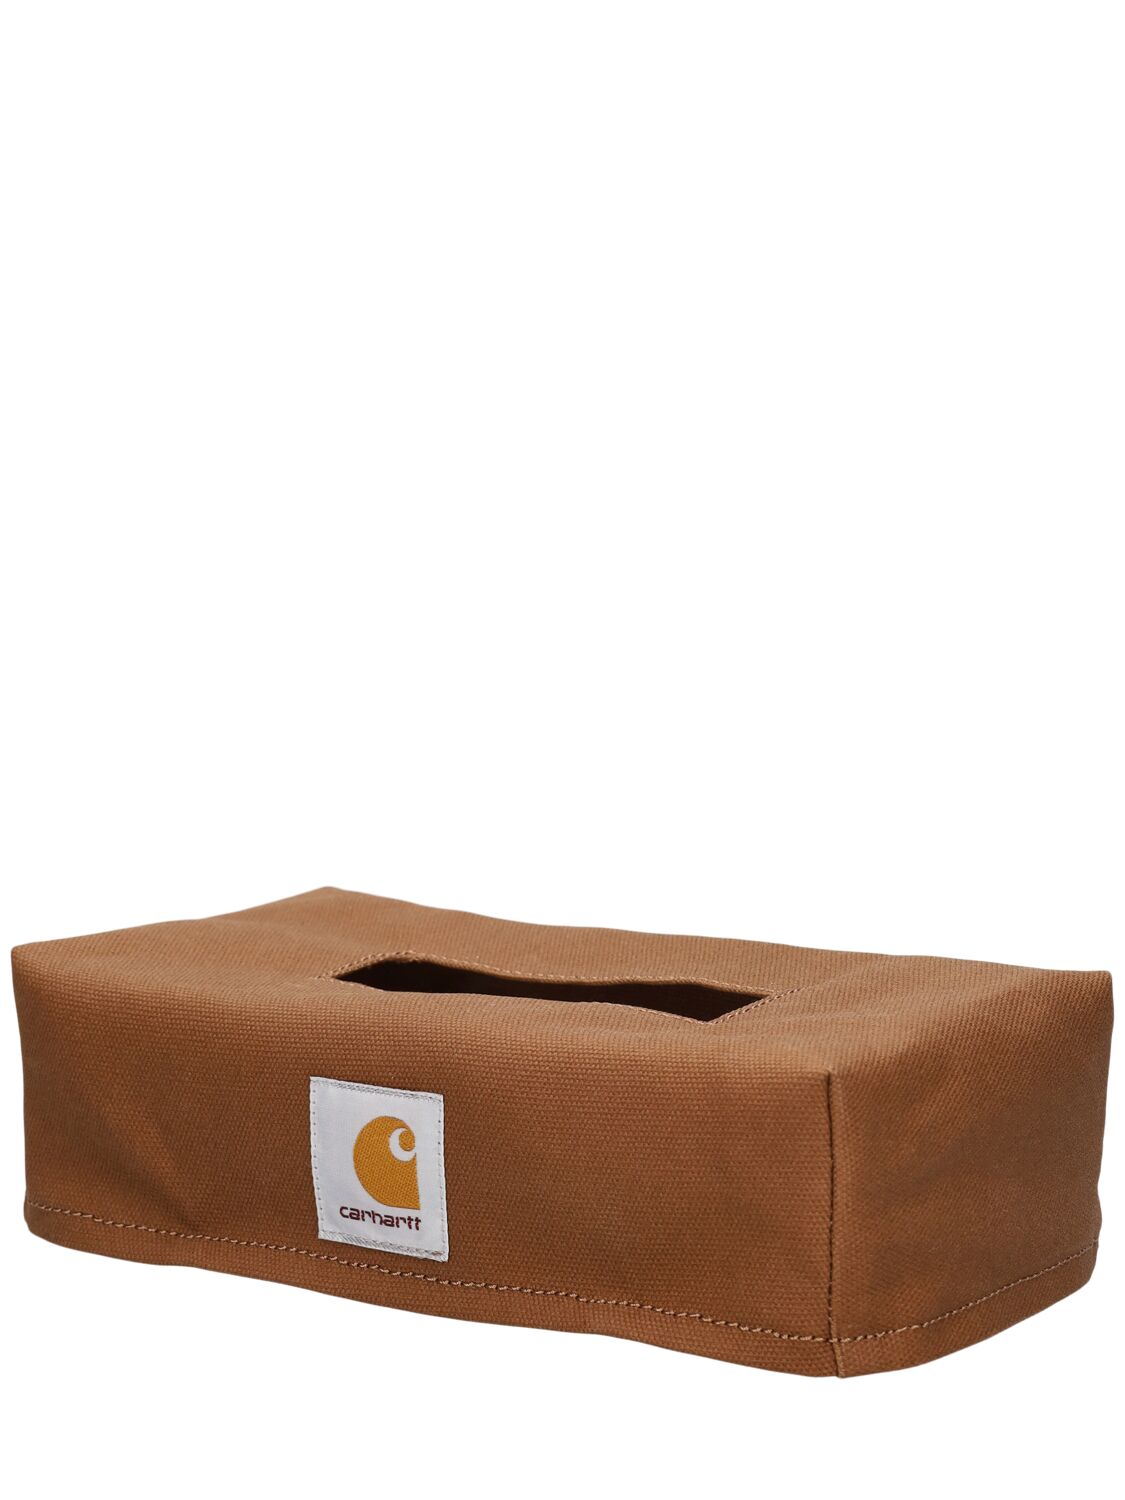 Shop Carhartt Tissue Box Cover In Hamilton Brown